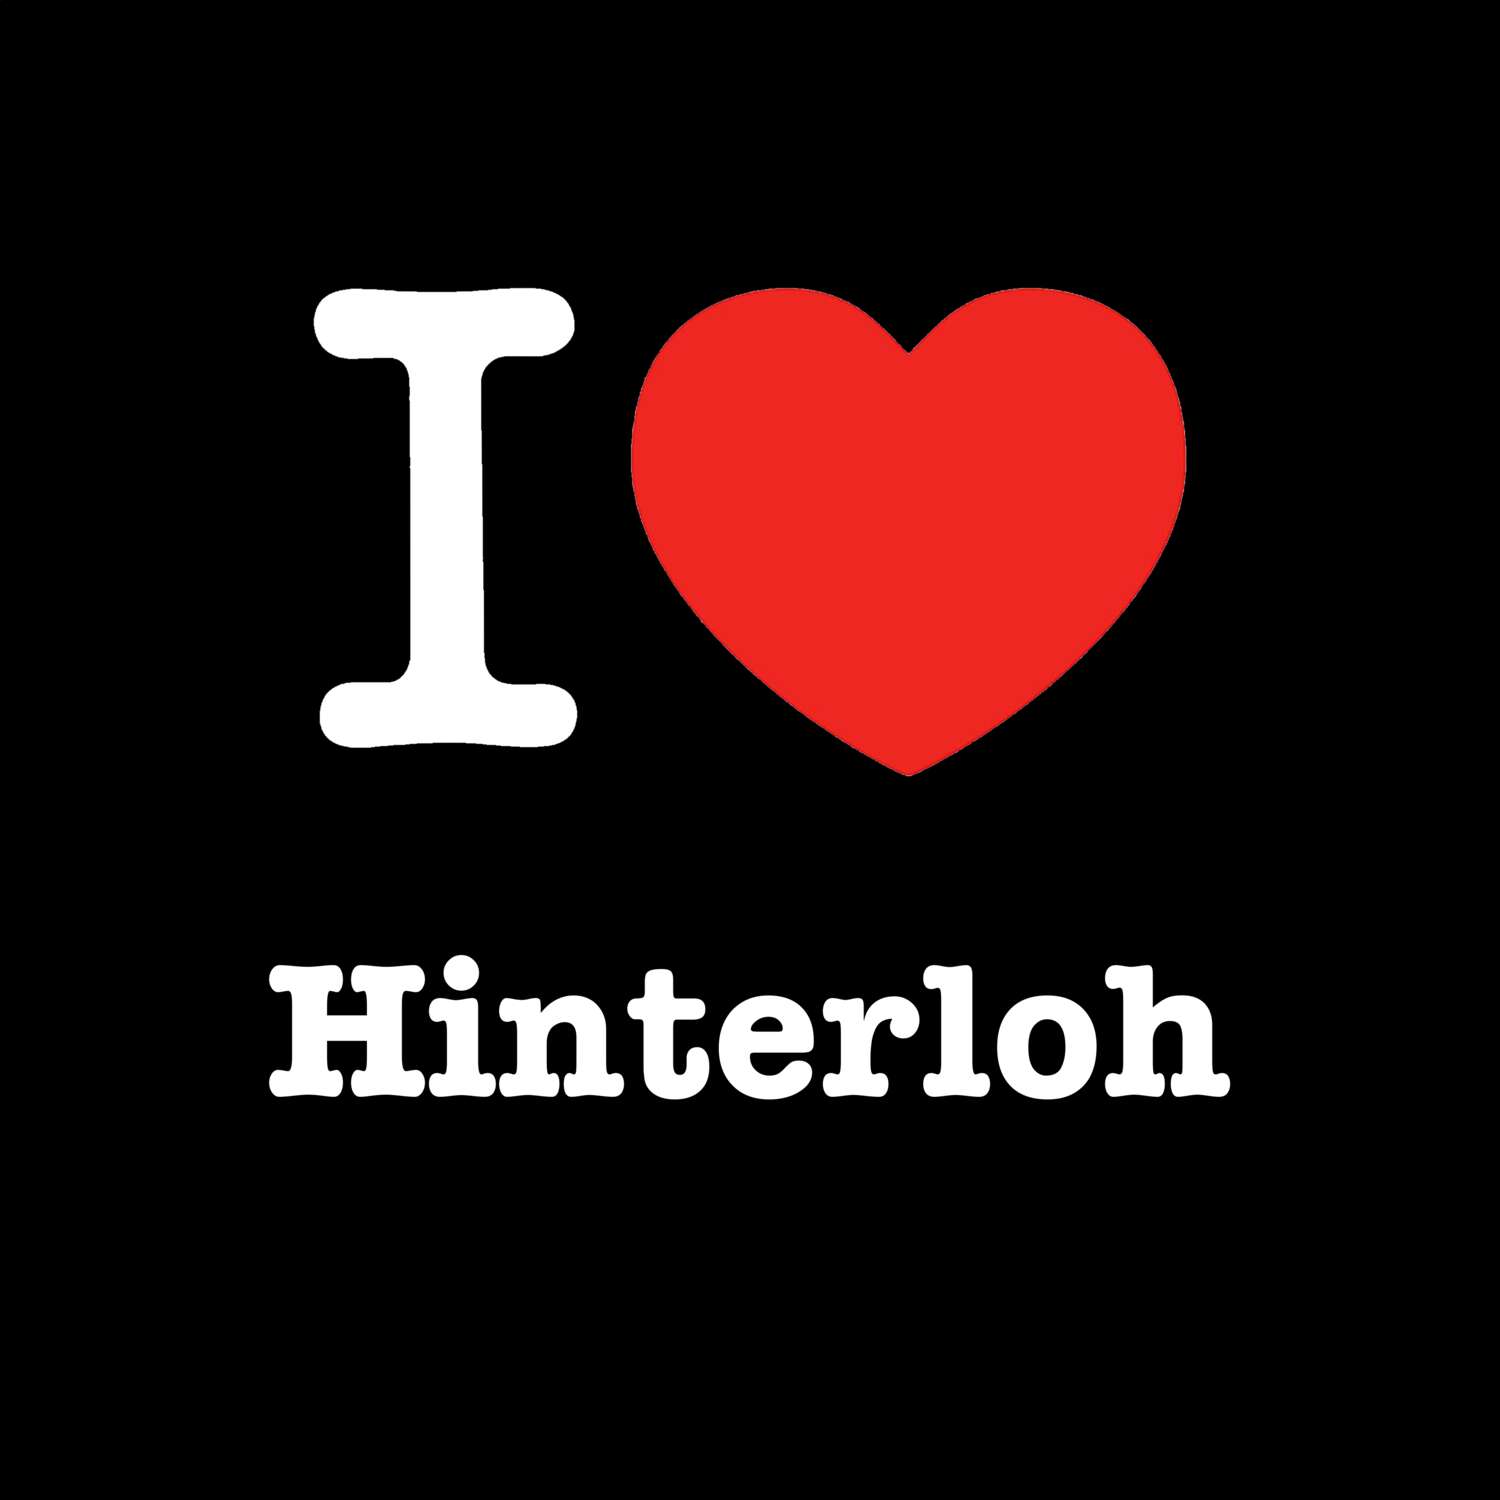 Hinterloh T-Shirt »I love«